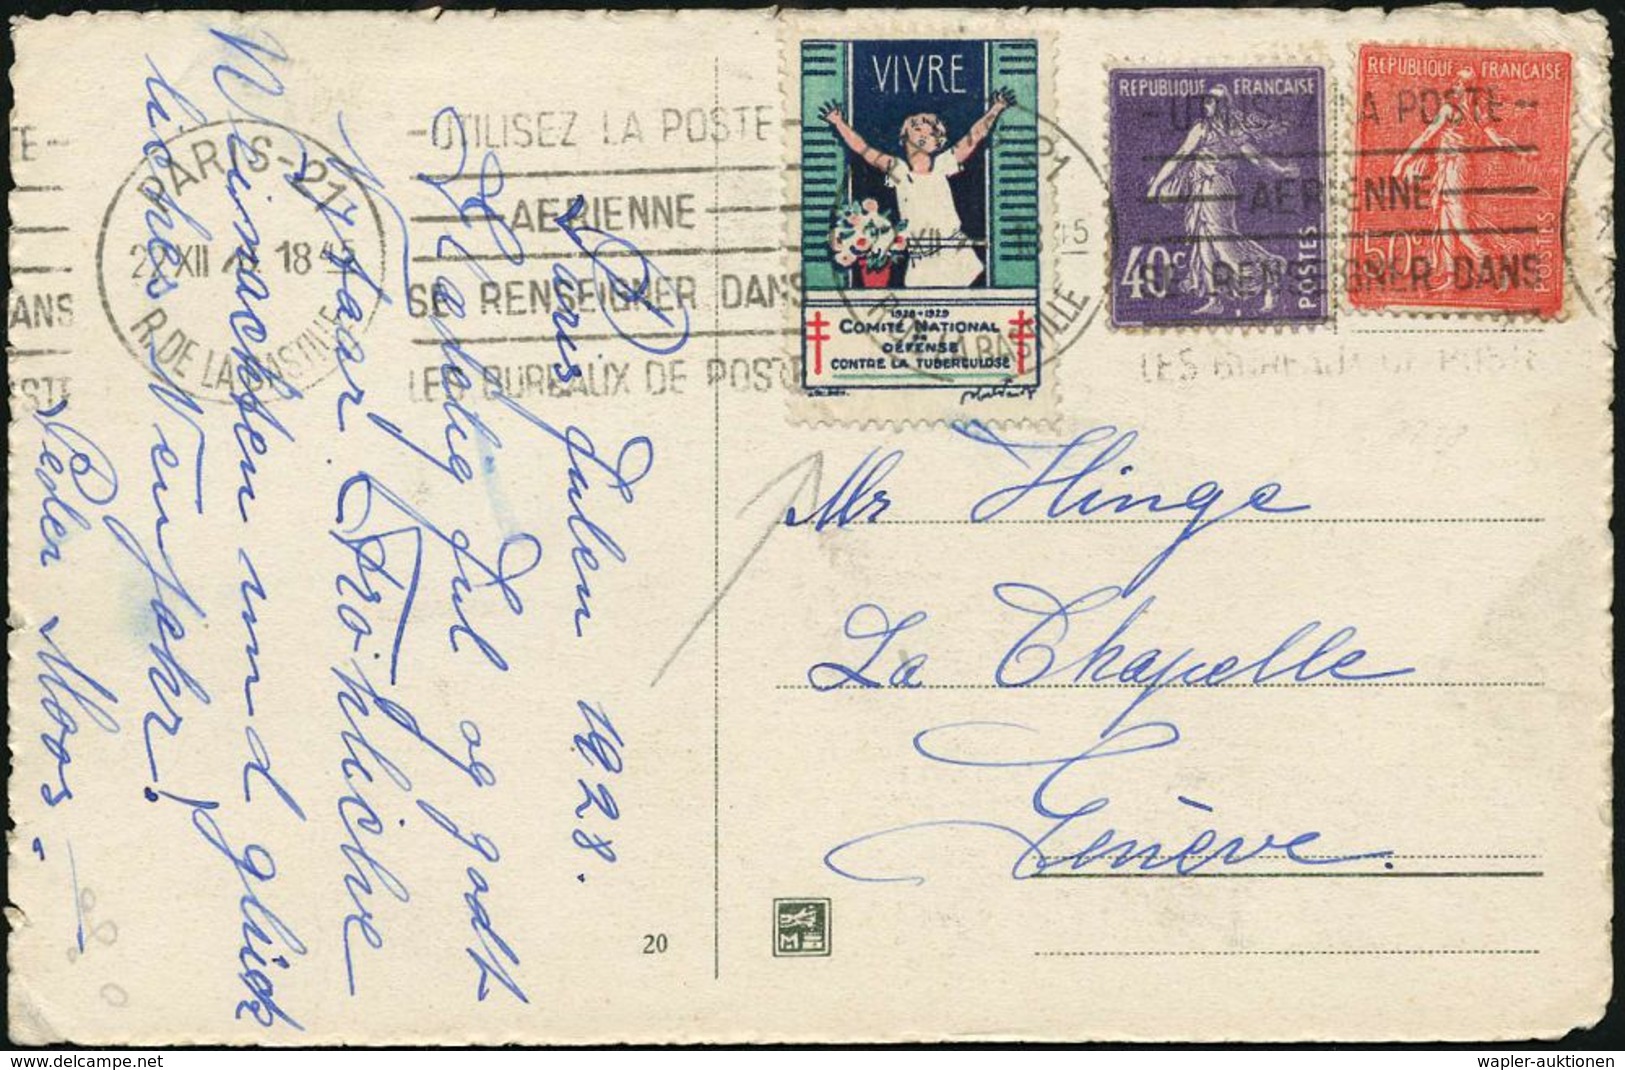 TUBERKULOSE / TBC-VORSORGE : FRANKREICH 1928 (22.12.) Tbc-Spendenmarke "VIVRE" Mit Frankatur Abgestempelt ,Weihnachts- A - Maladies